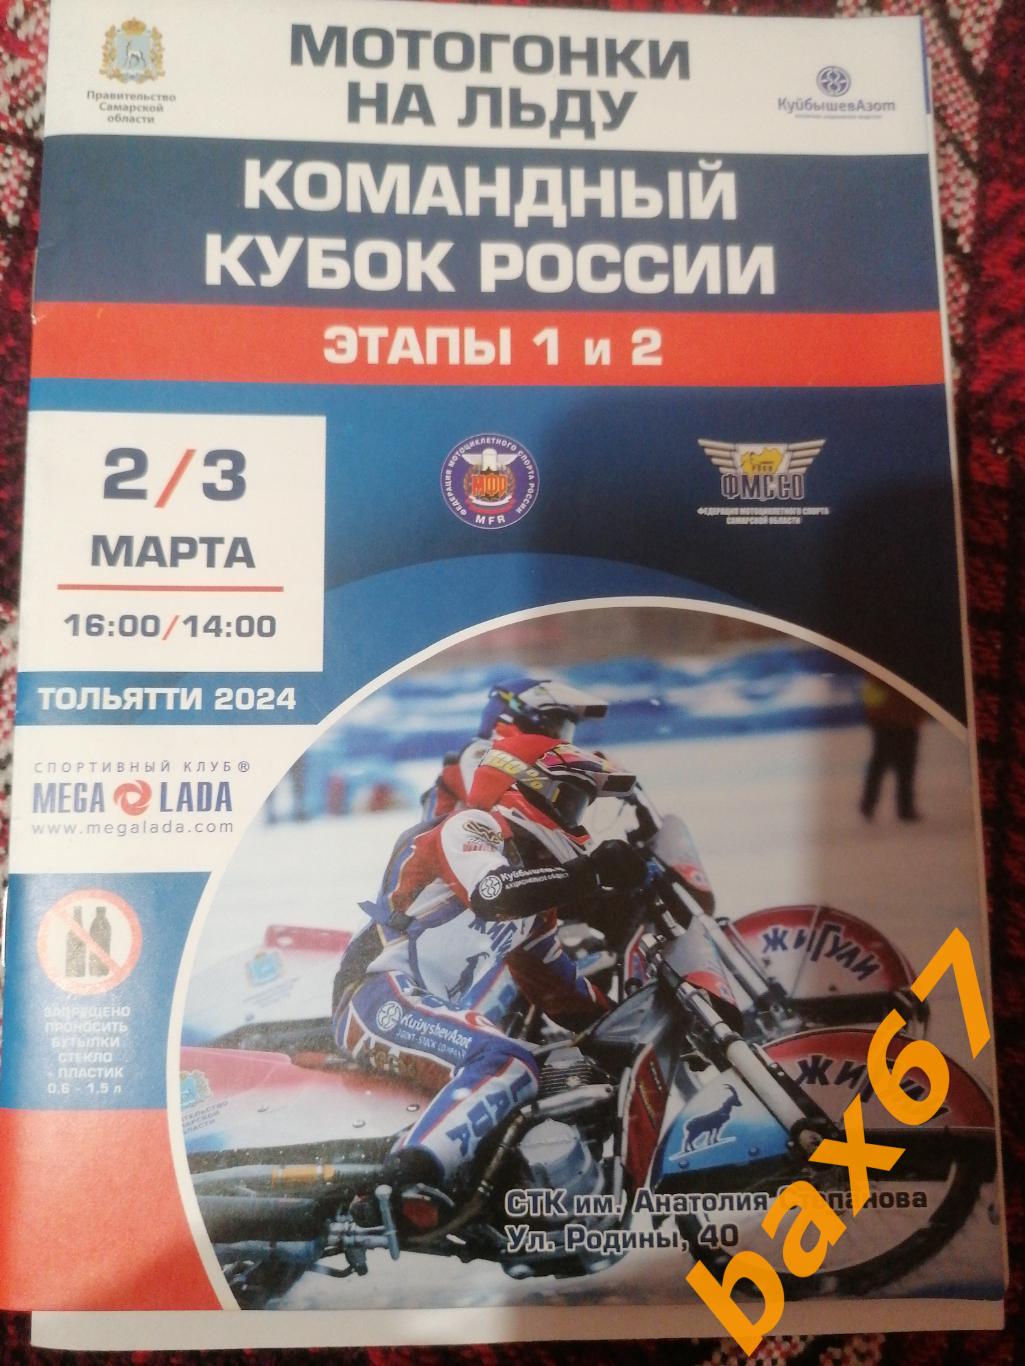 Мотогонки на льду, Тольятти 2-3.03.2024.